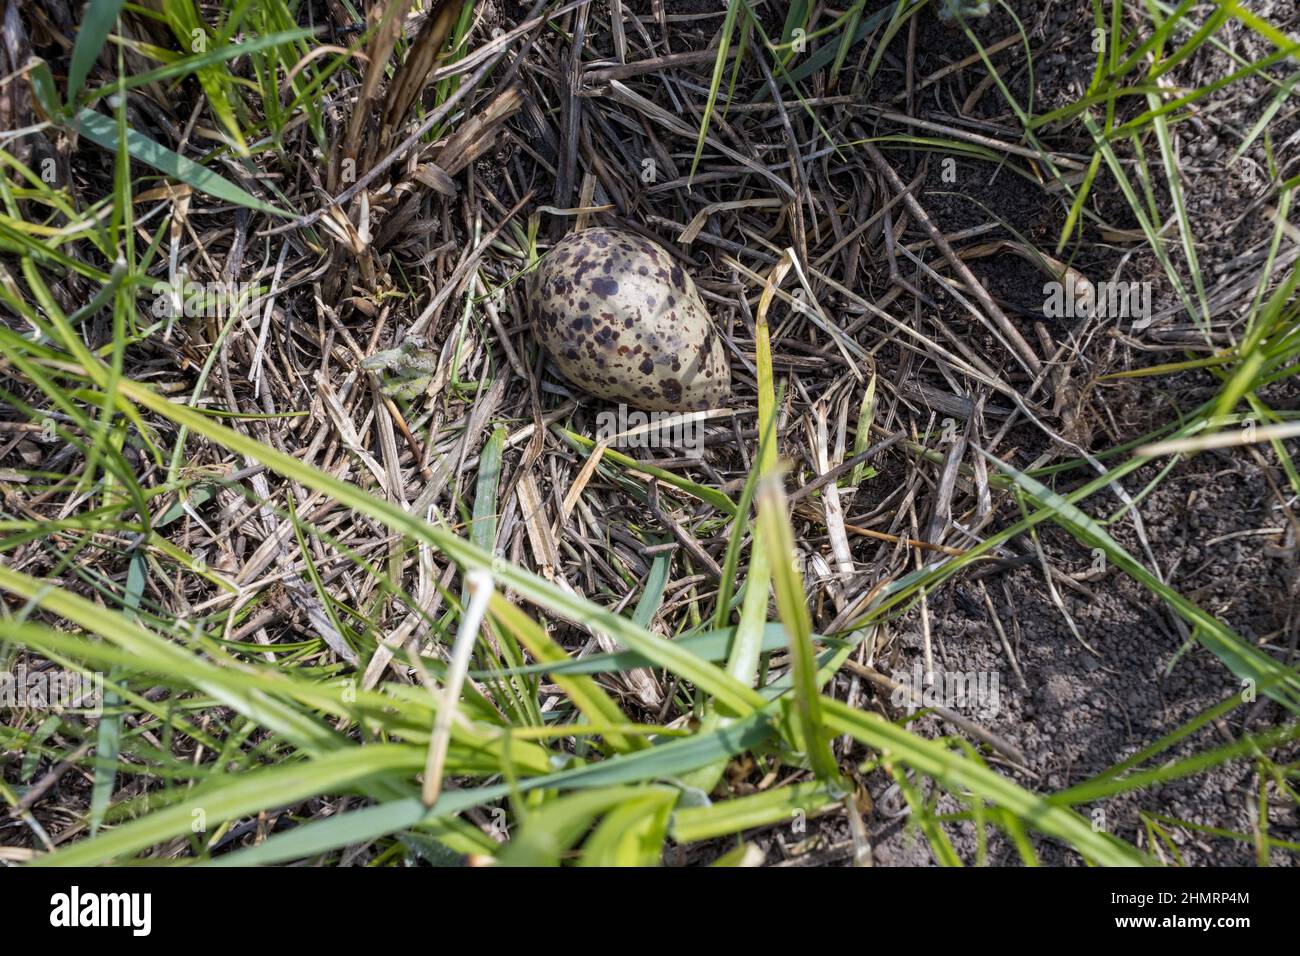 Tringa totanus. Vogelarten werden ungenau identifiziert. Das Nest der Rotschenkel in der Natur. Russland, die Region Rjasan Stockfoto